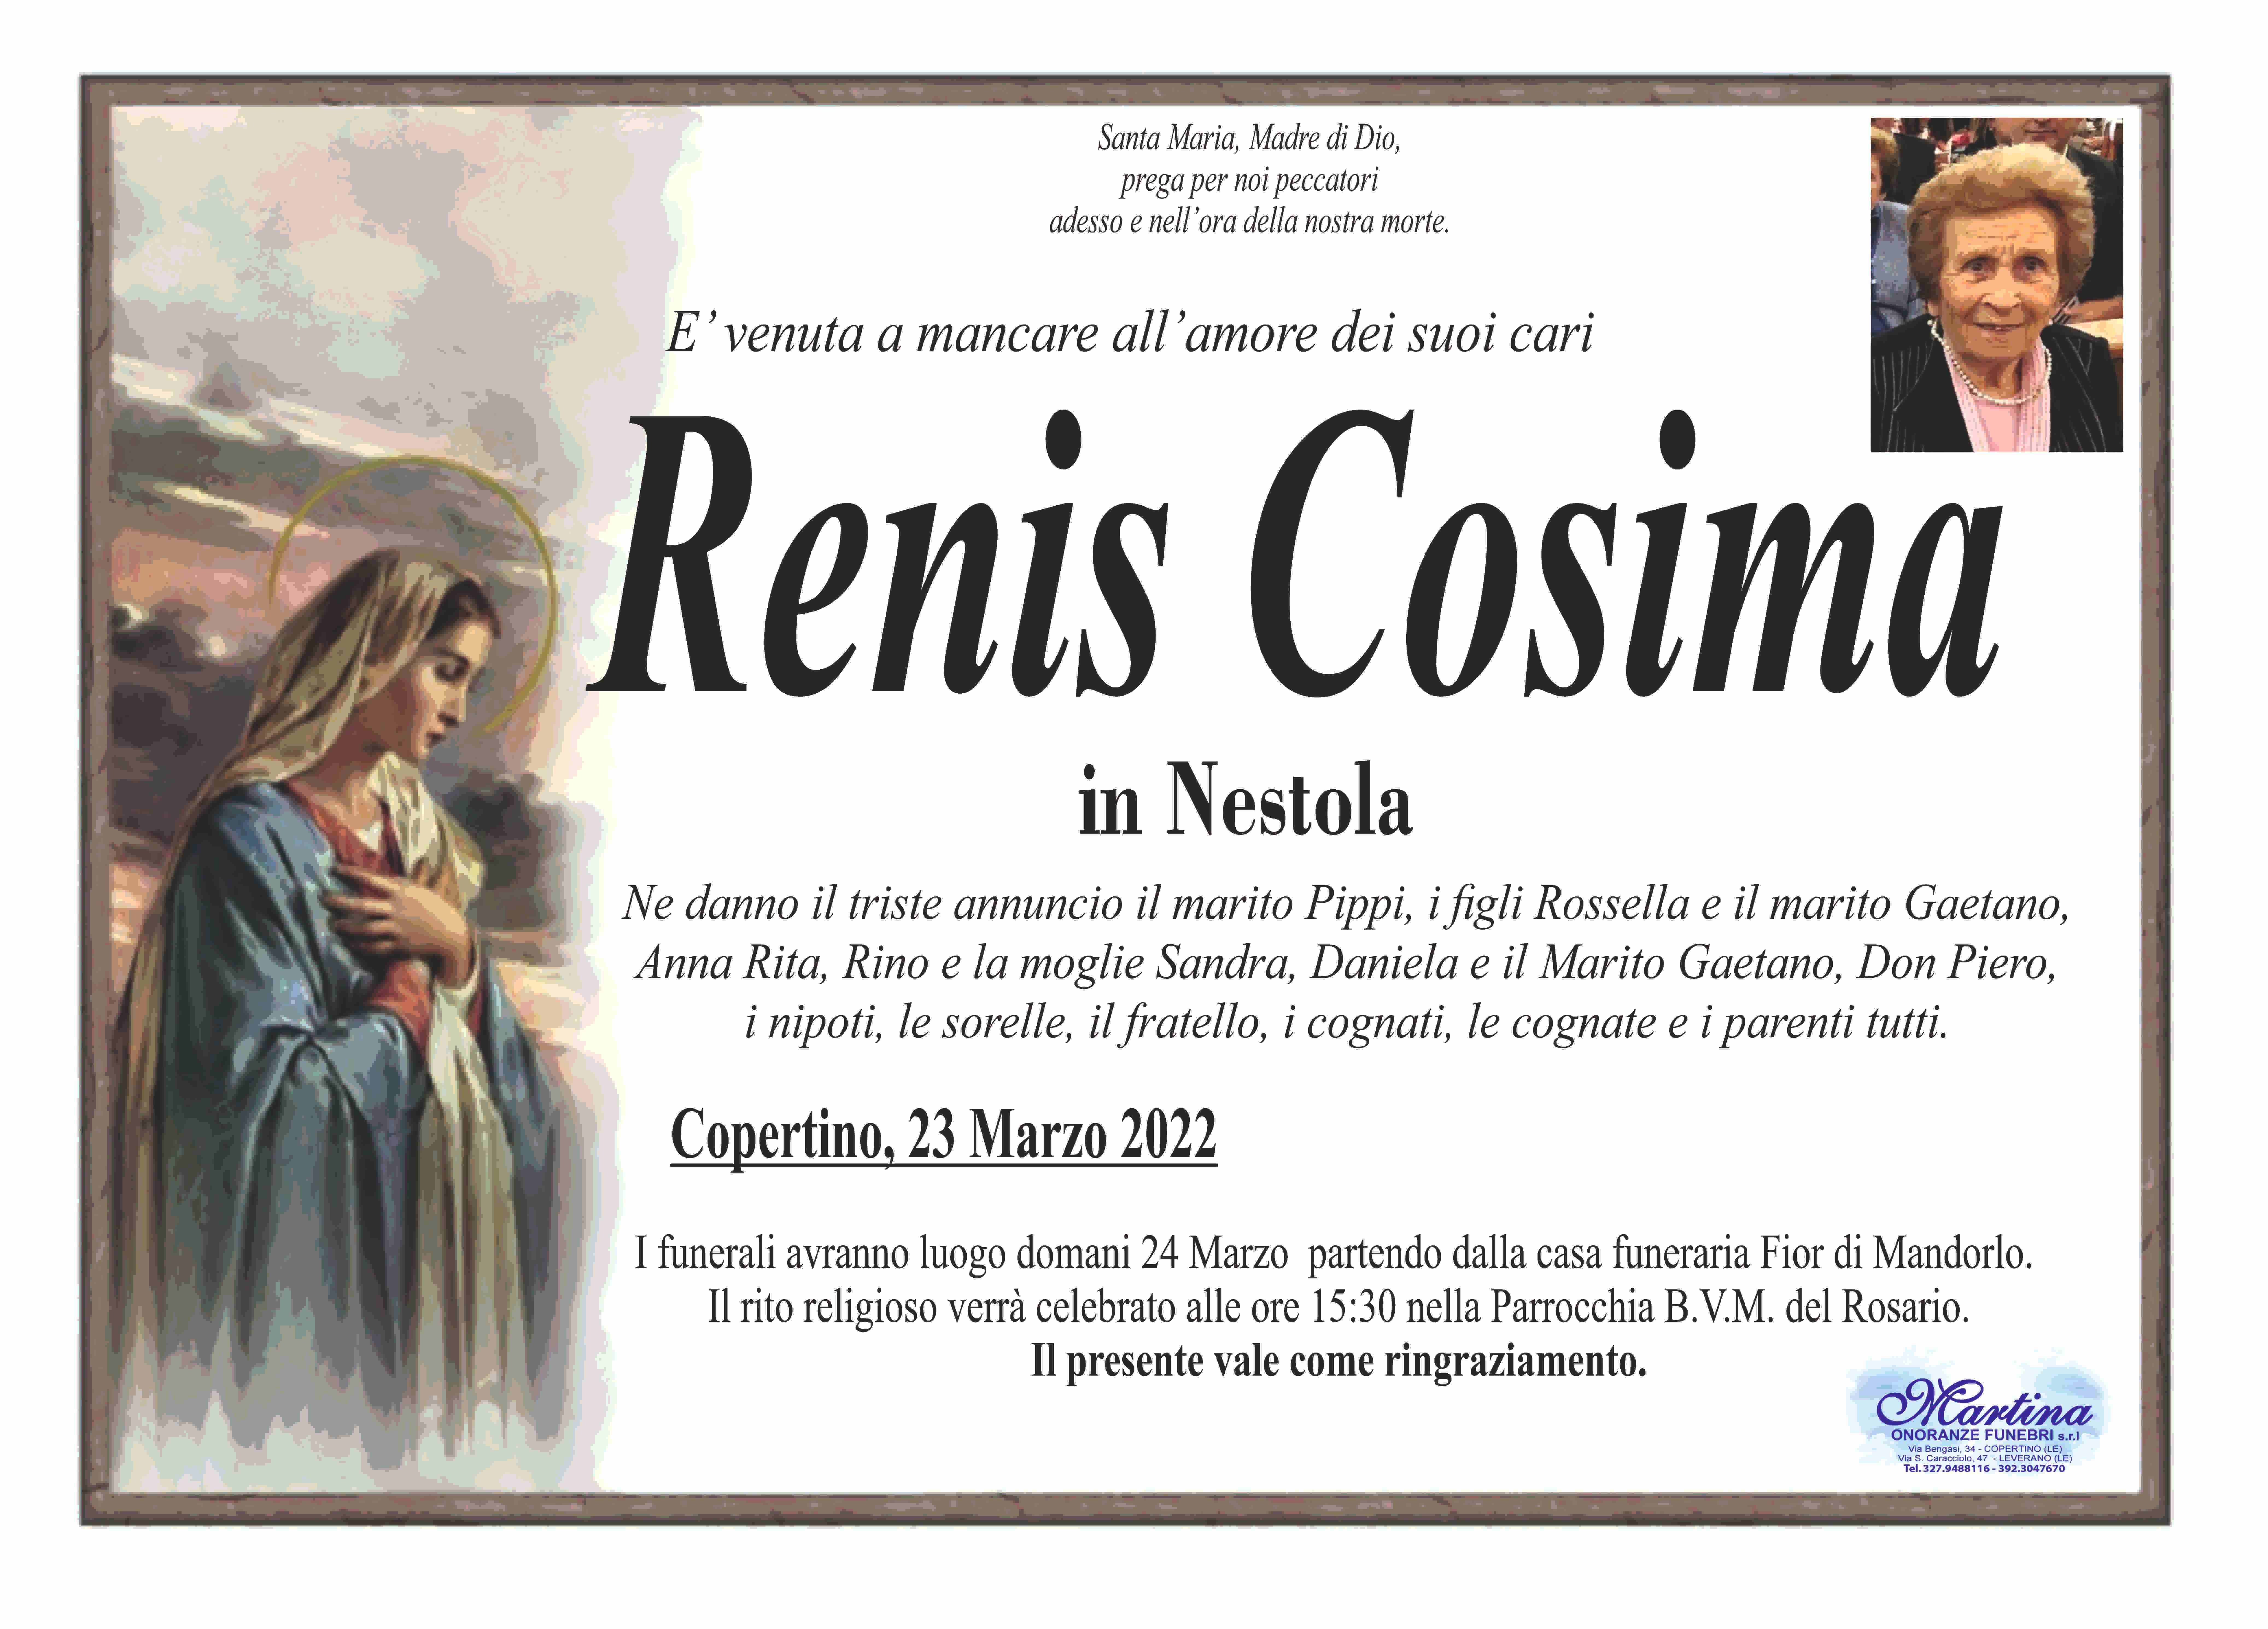 Cosima Renis